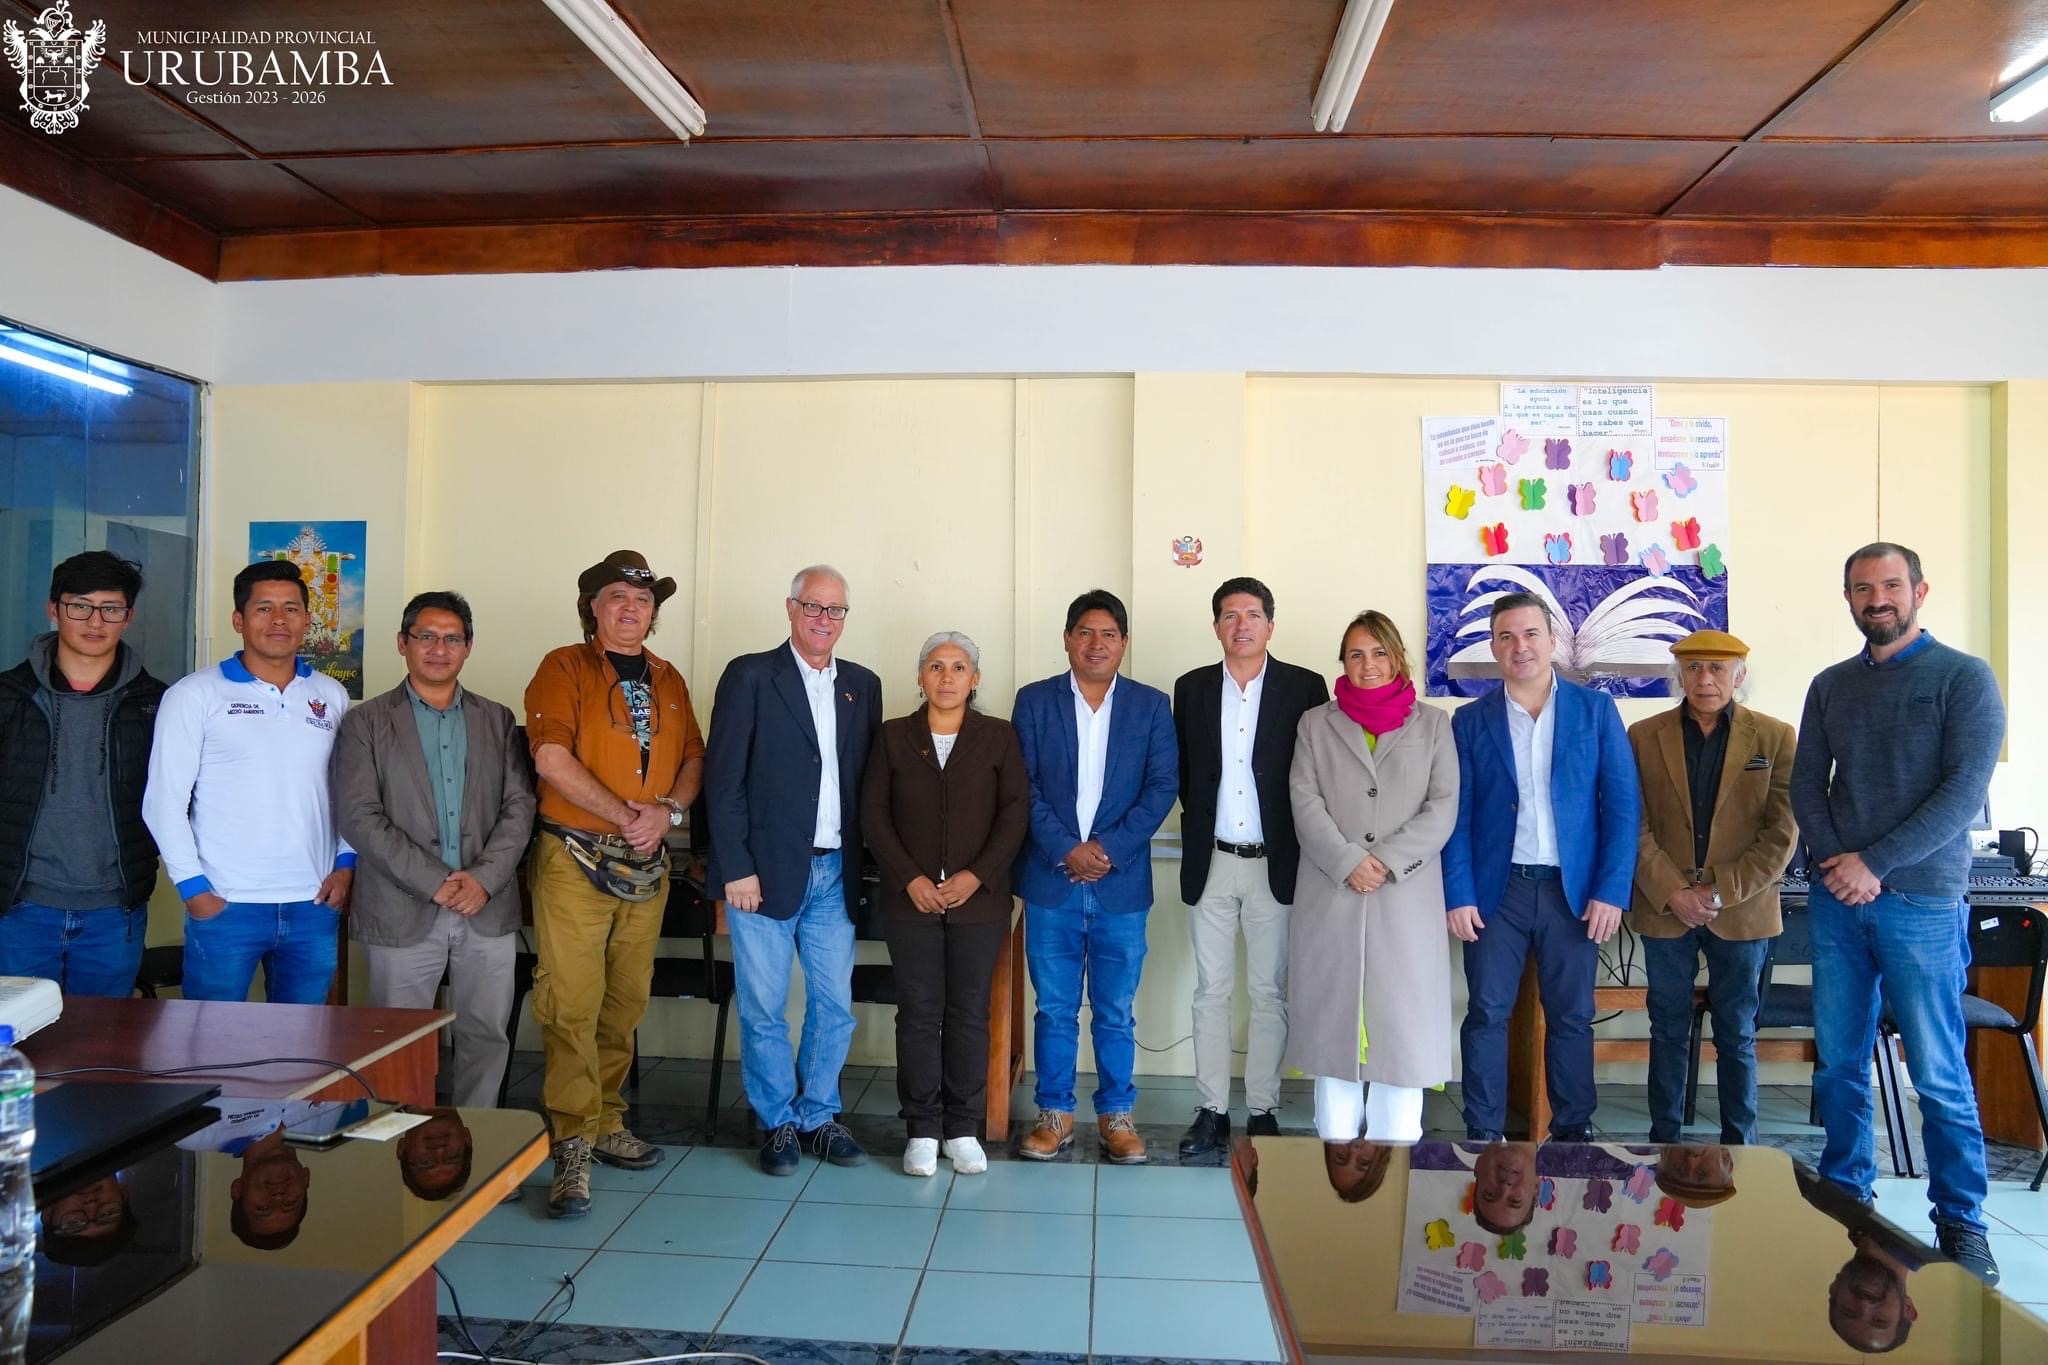 Perù: Tavola rotonda per la presentazione dello Studio sulle Tecnologie e Soluzioni per la Gestione dei Rifiuti Solidi a Urubamba